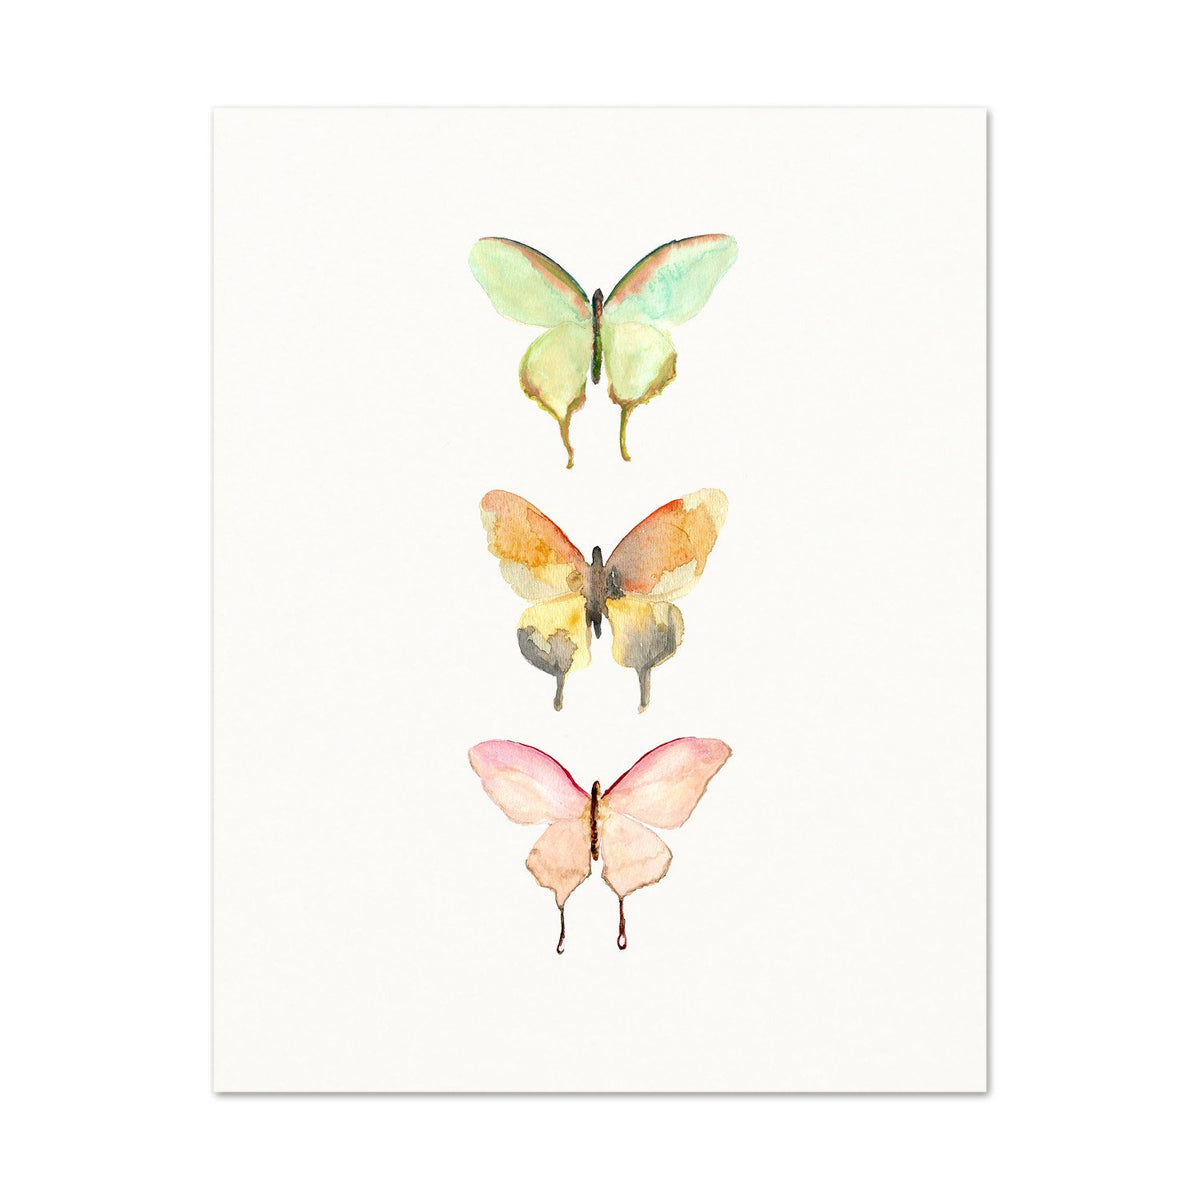 Nursery Wall Art. Nature Inspired Decor. Butterfly Art Print.